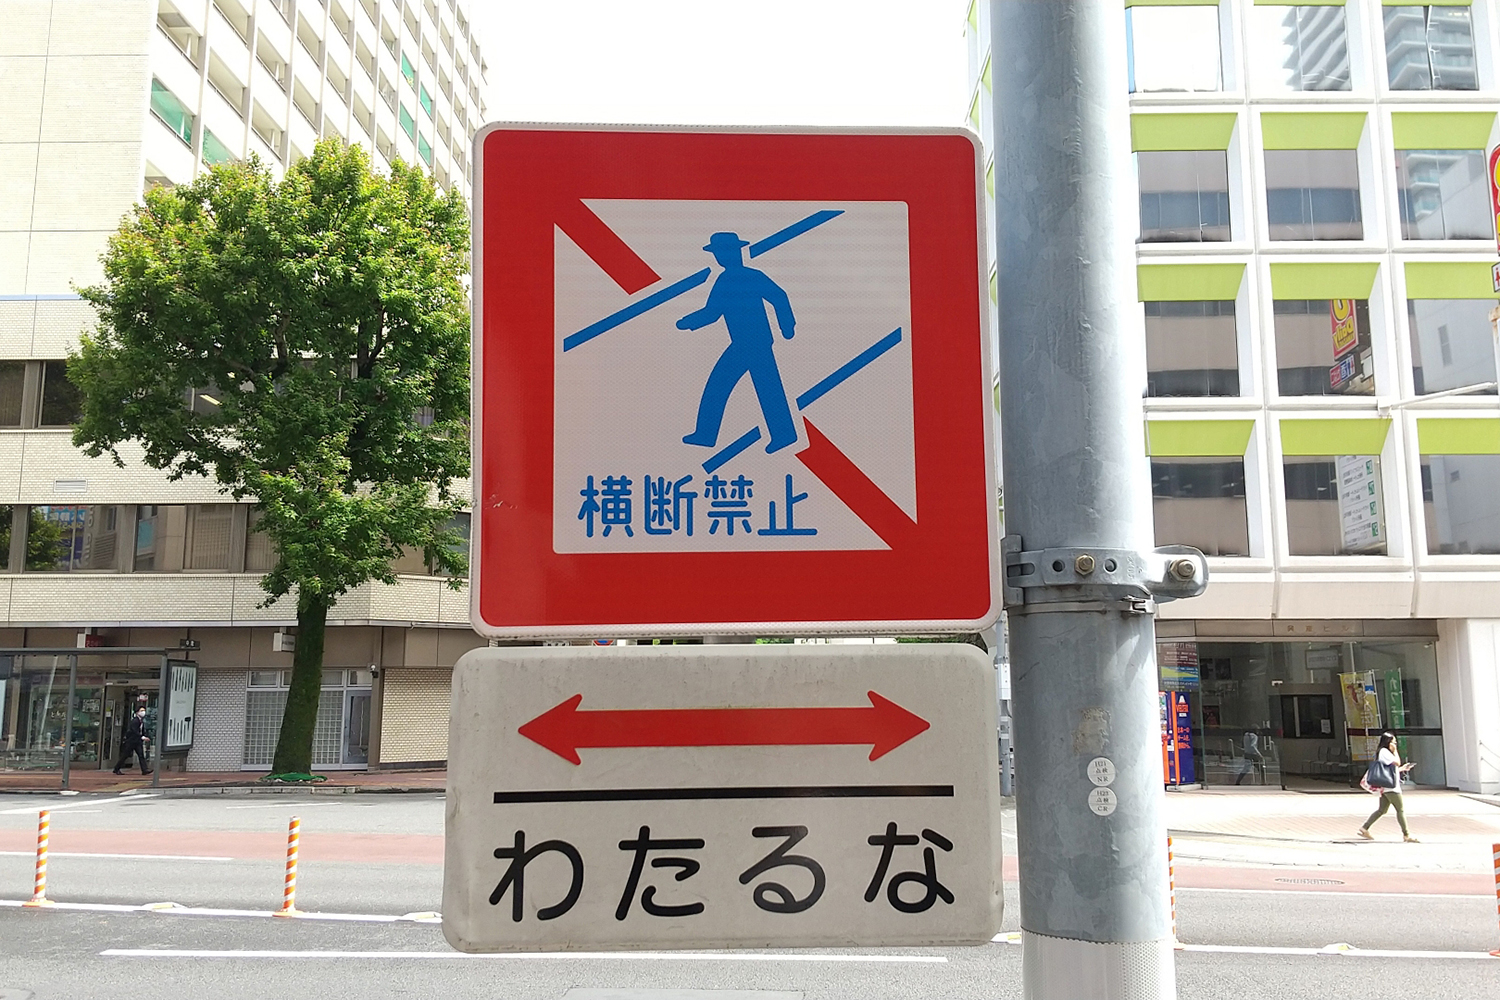 最近「横断禁止」に代わって「わたるな」と書かれた標識が増えている理由 〜 画像3